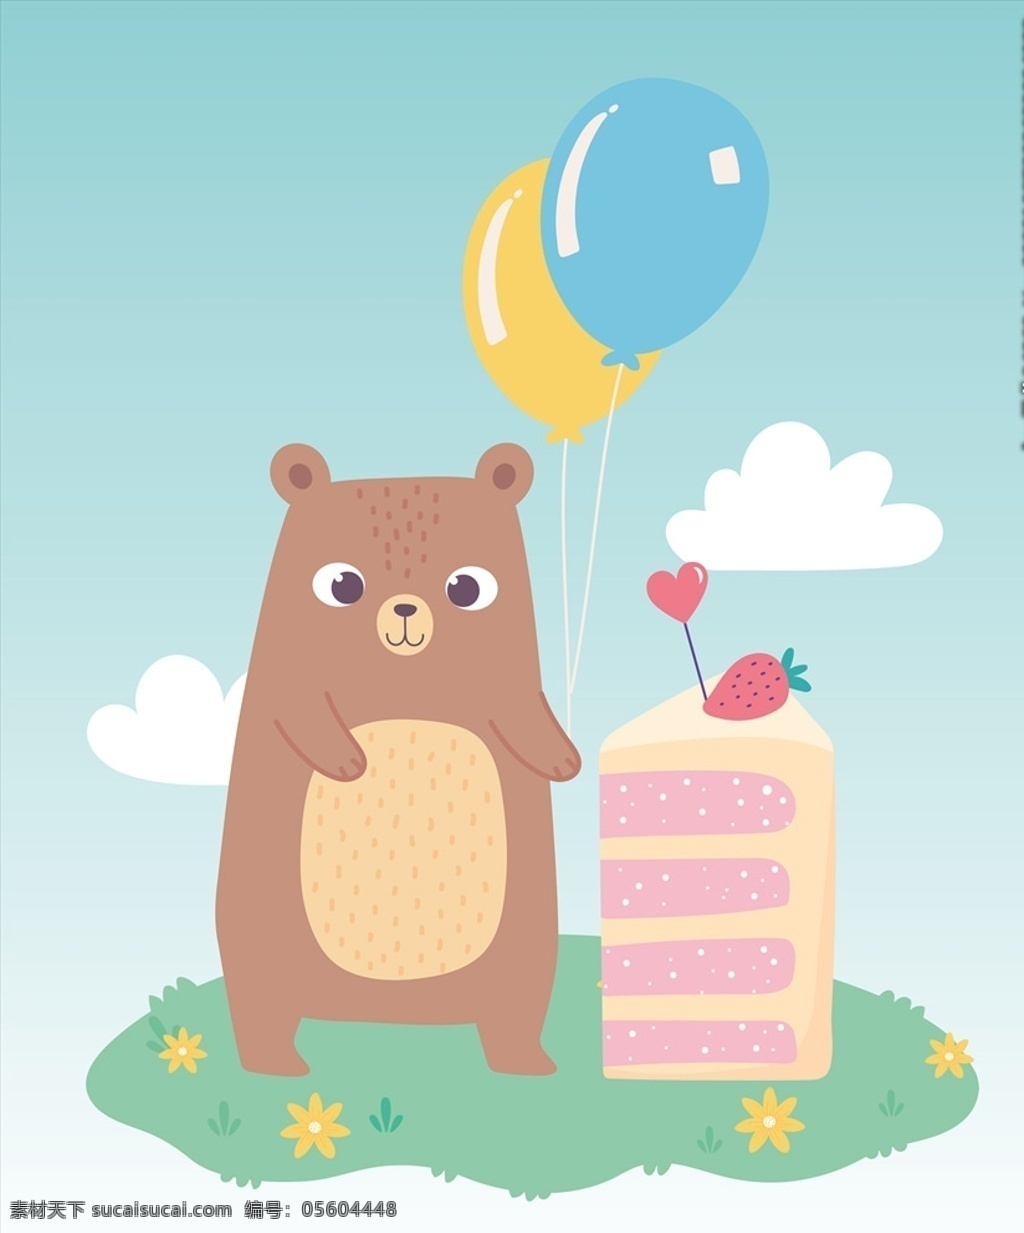 手绘 淡 彩 动物图片 手绘淡彩动物 卡通 动物 可爱 卡哇伊 卡片 封面 生日快乐 生日 礼盒 汽球 蛋糕 卡通设计